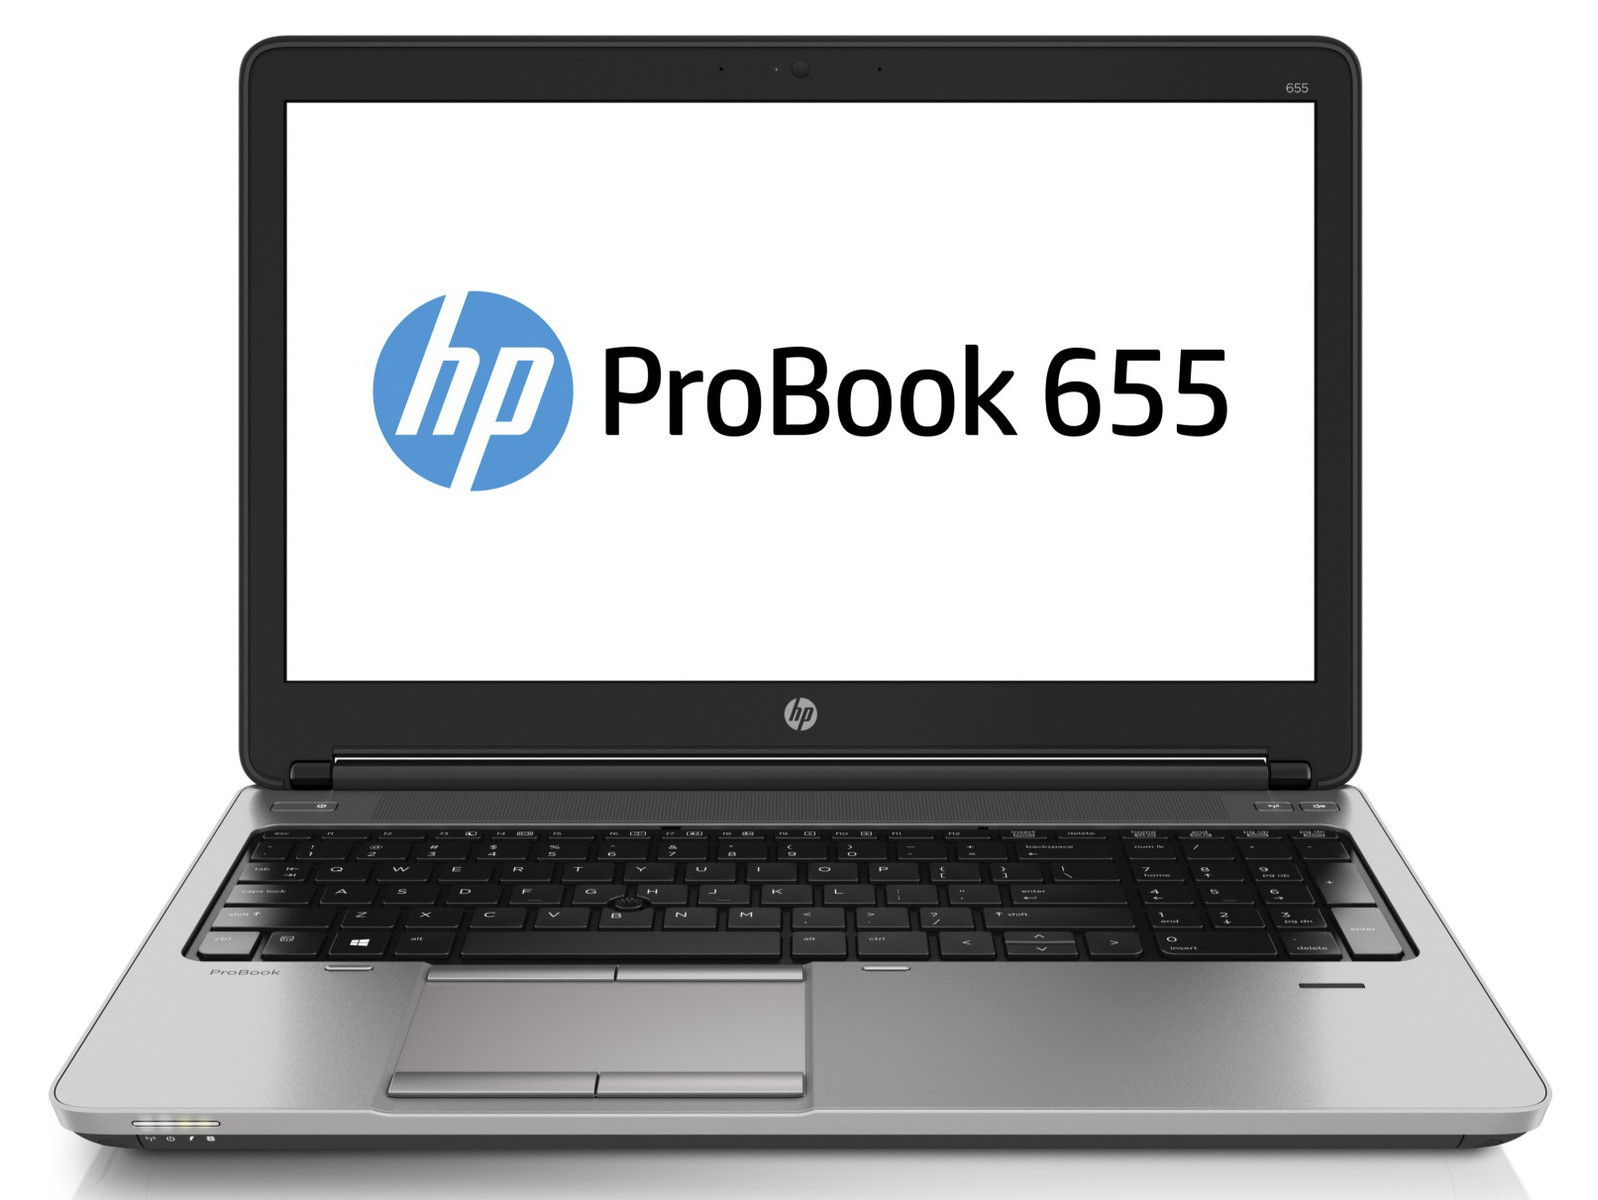 Laptop HP ProBook 655 G2, AMD A10-8700B 1.80GHz, 4GB DDR3, 320GB SATA, DVD-RW, 15.6 Inch